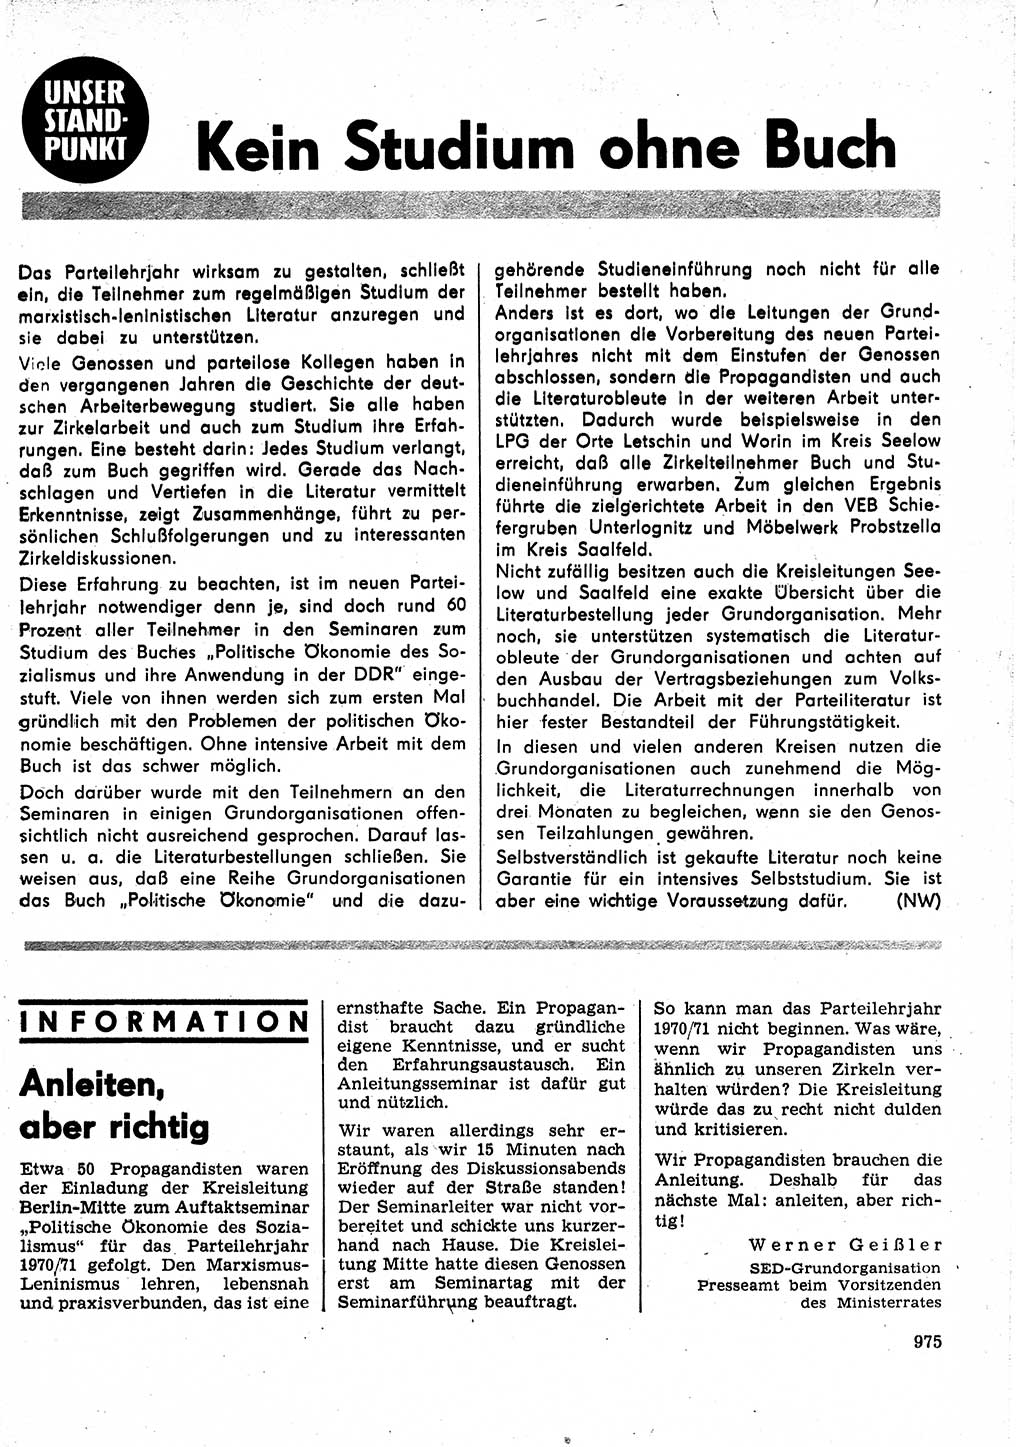 Neuer Weg (NW), Organ des Zentralkomitees (ZK) der SED (Sozialistische Einheitspartei Deutschlands) für Fragen des Parteilebens, 25. Jahrgang [Deutsche Demokratische Republik (DDR)] 1970, Seite 975 (NW ZK SED DDR 1970, S. 975)